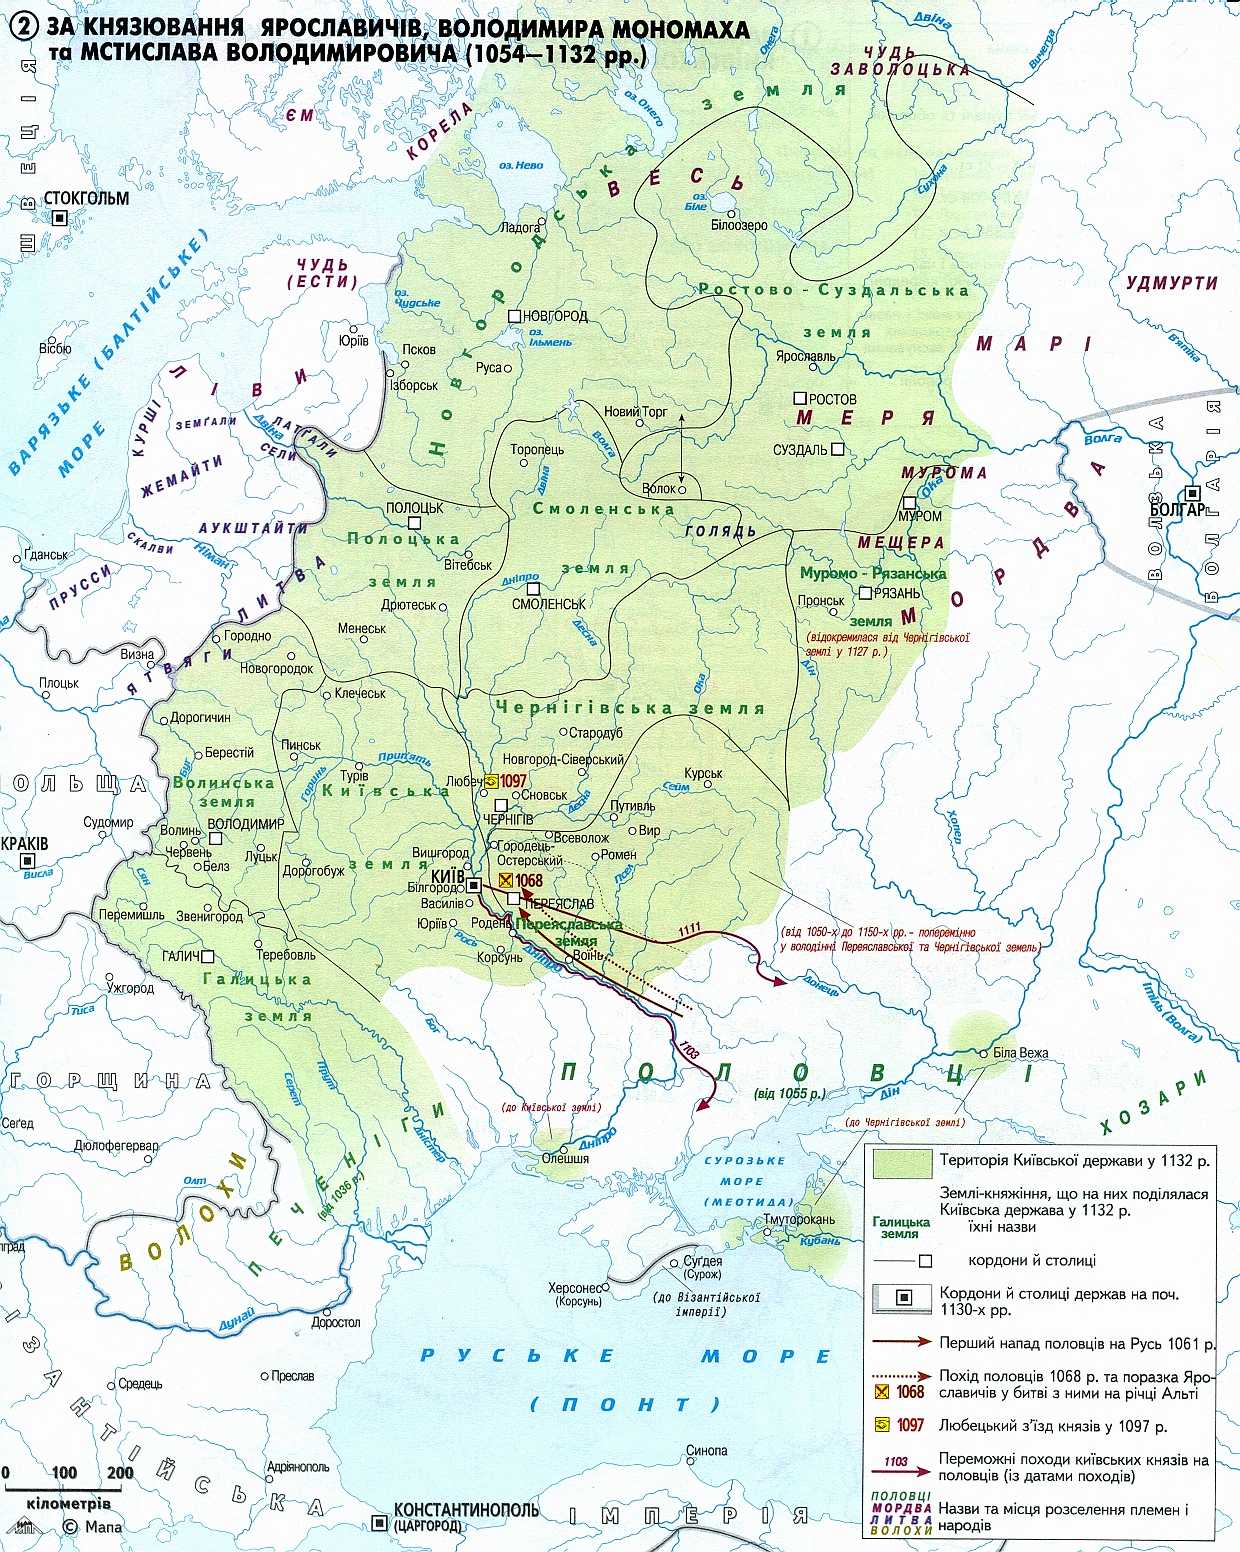 Київська держава (1054-1132 рр.)